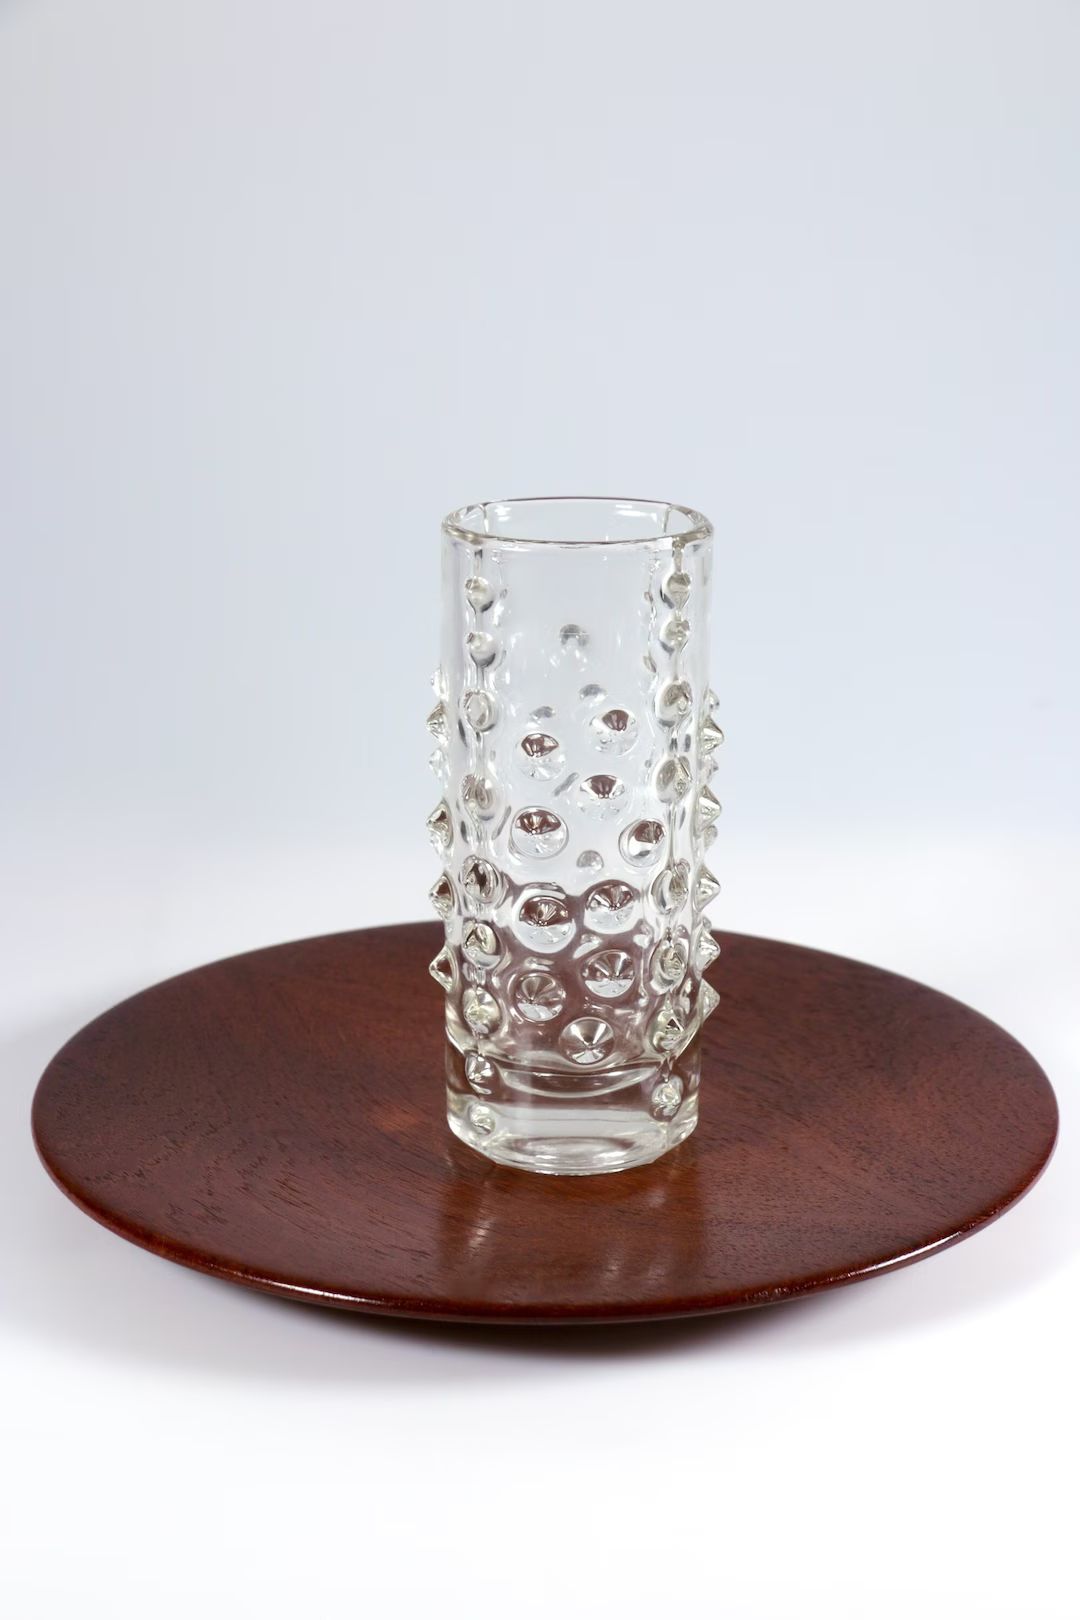 Hermanova Sklo Czech art glass vase 1970s midcentury modernist space age spiky glass vase brutali... | Etsy (US)